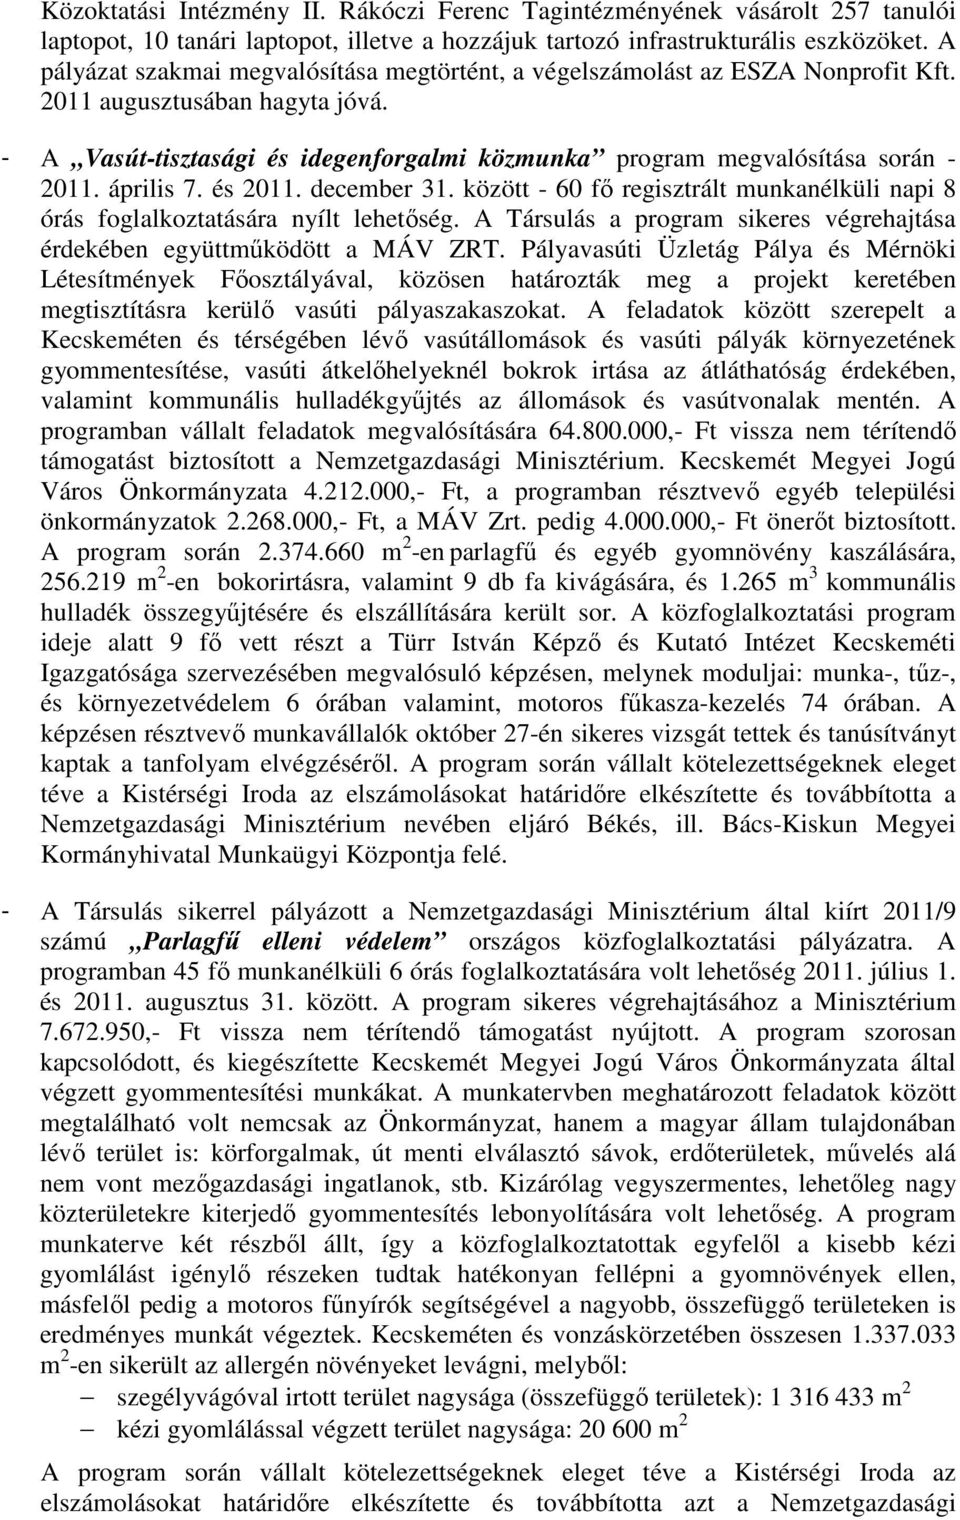 április 7. és 2011. december 31. között - 60 fı regisztrált munkanélküli napi 8 órás foglalkoztatására nyílt lehetıség. A Társulás a program sikeres végrehajtása érdekében együttmőködött a MÁV ZRT.